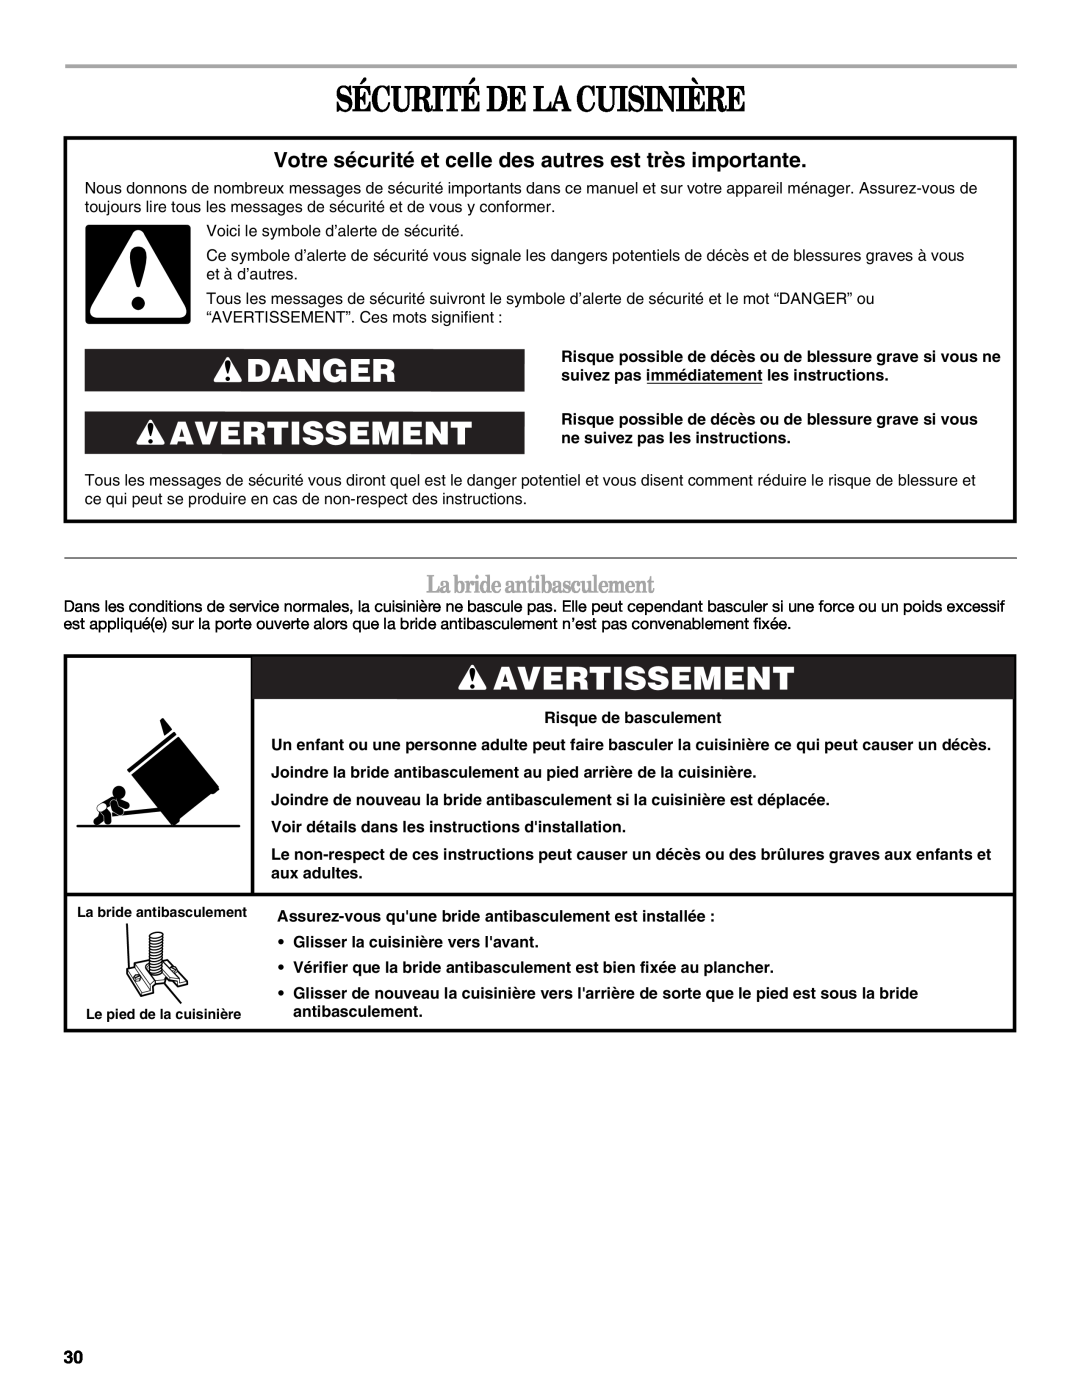 Whirlpool GERC4110PB0 manual Sécurité De La Cuisinière, Danger Avertissement, Labrideantibasculement, Risque de basculement 